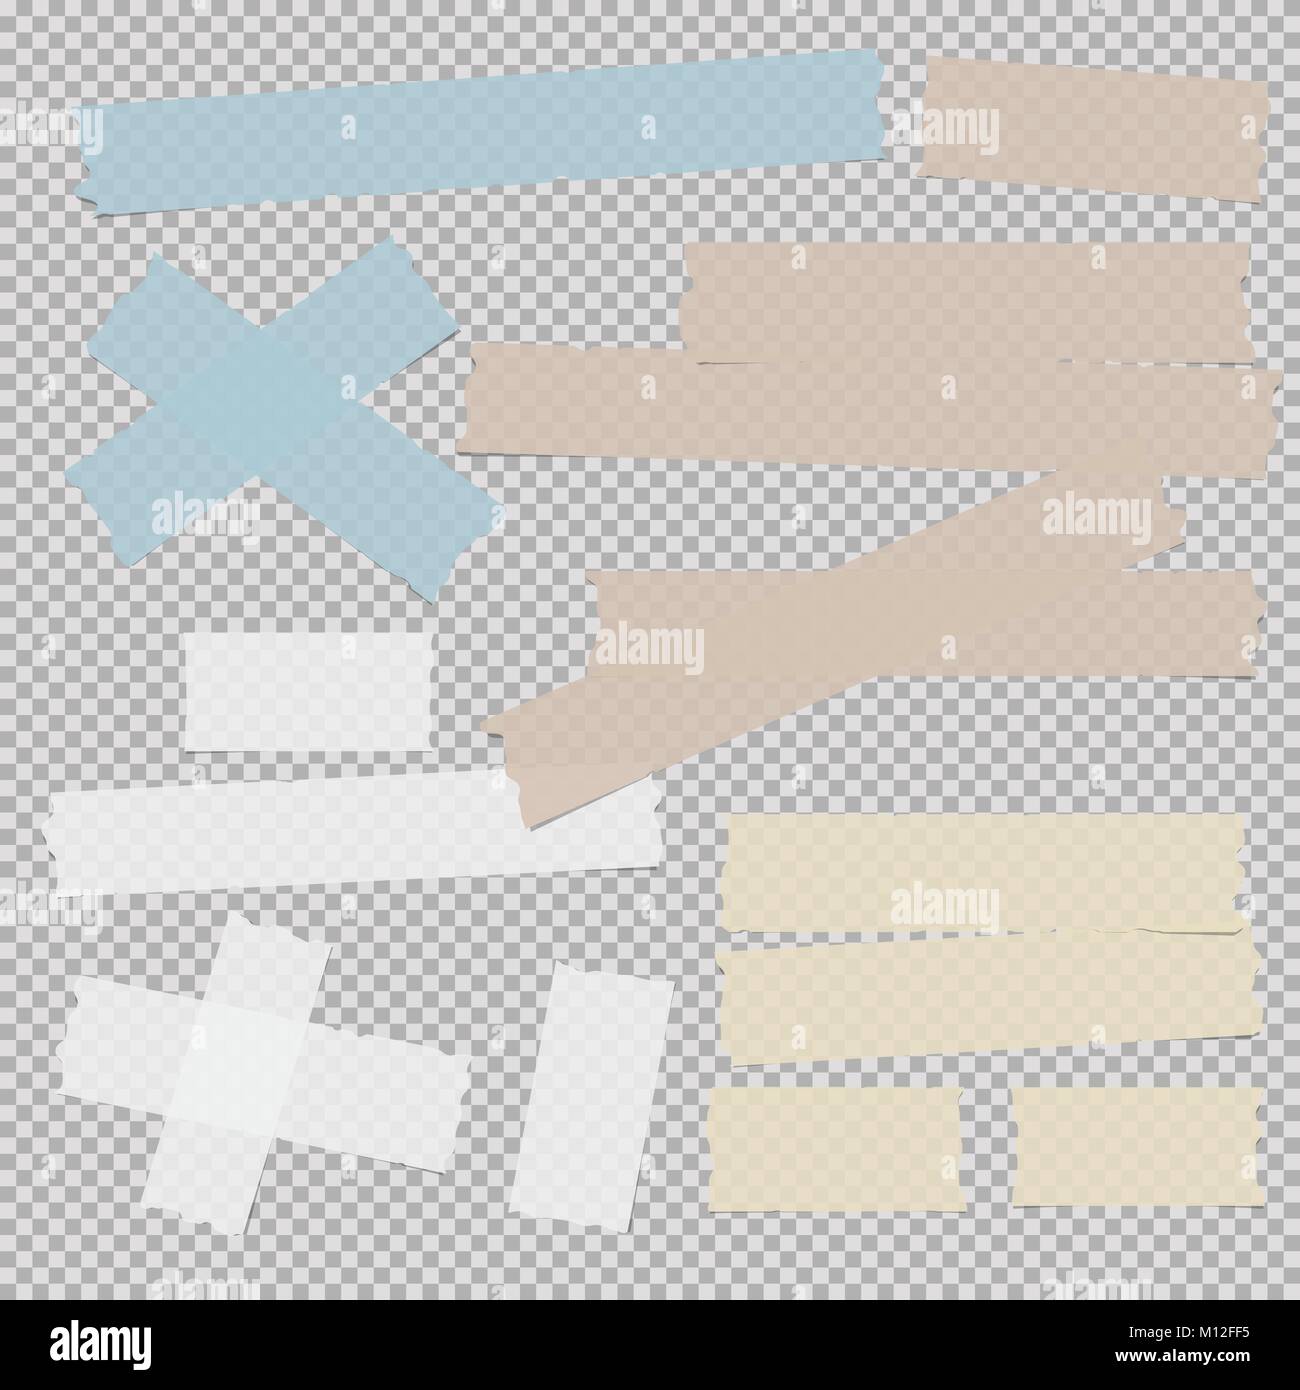 Blu, marrone, bianco e giallo, adesivo appiccicoso, mascherare il nastro del condotto, pezzi di carta per testo grigio su sfondo quadrato Illustrazione Vettoriale